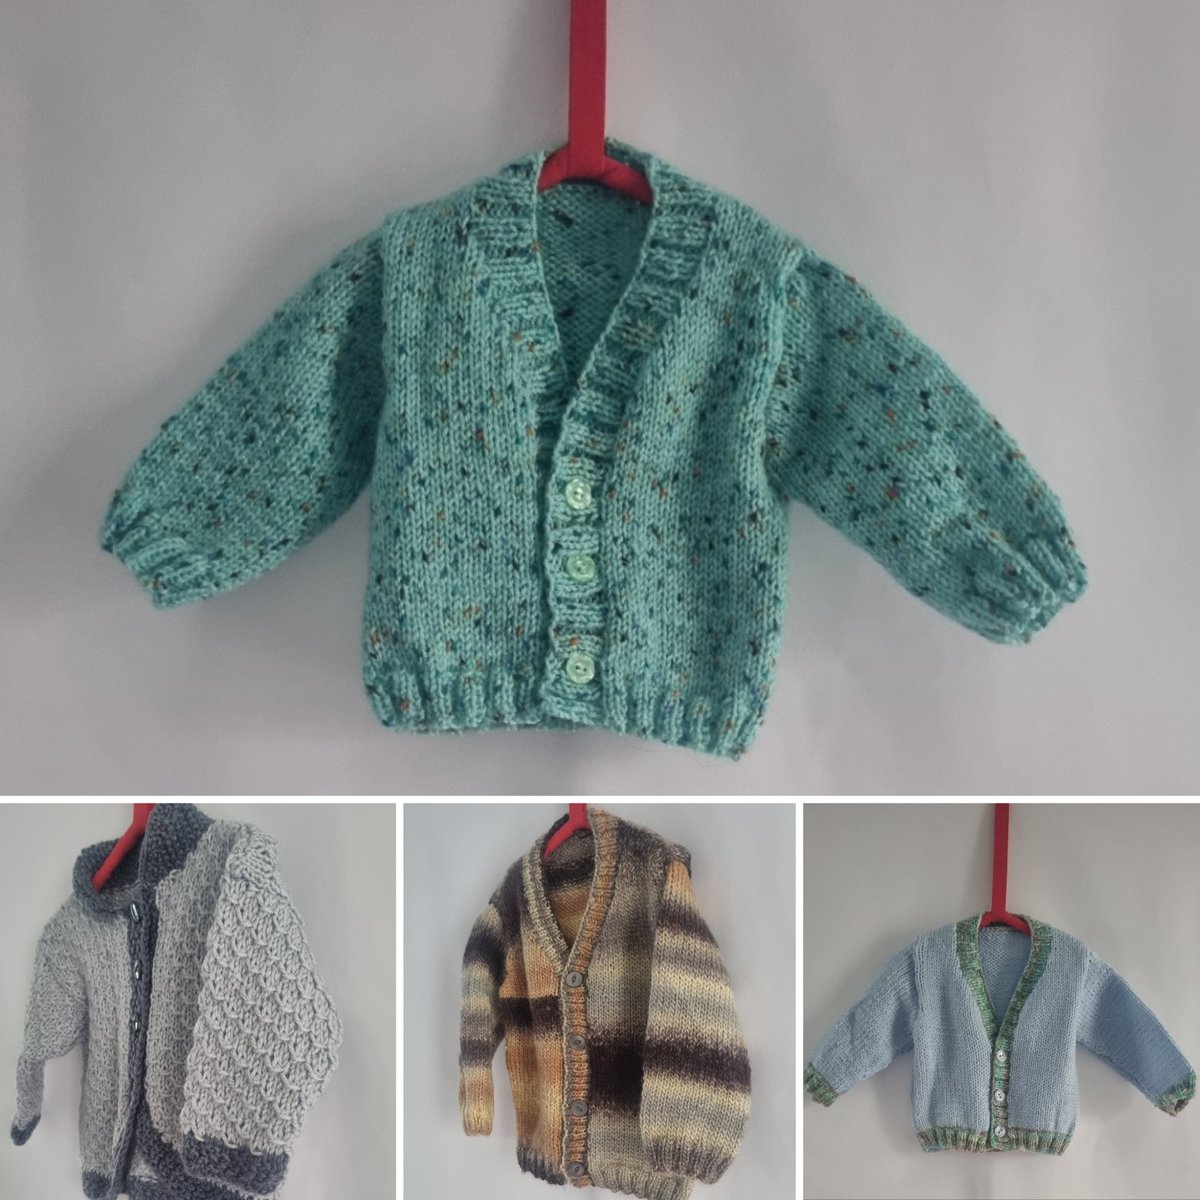 Baby boy knitting #babyknitting #babyboy #handmadegifts #newborngifts #folksy poppyknitwear.com